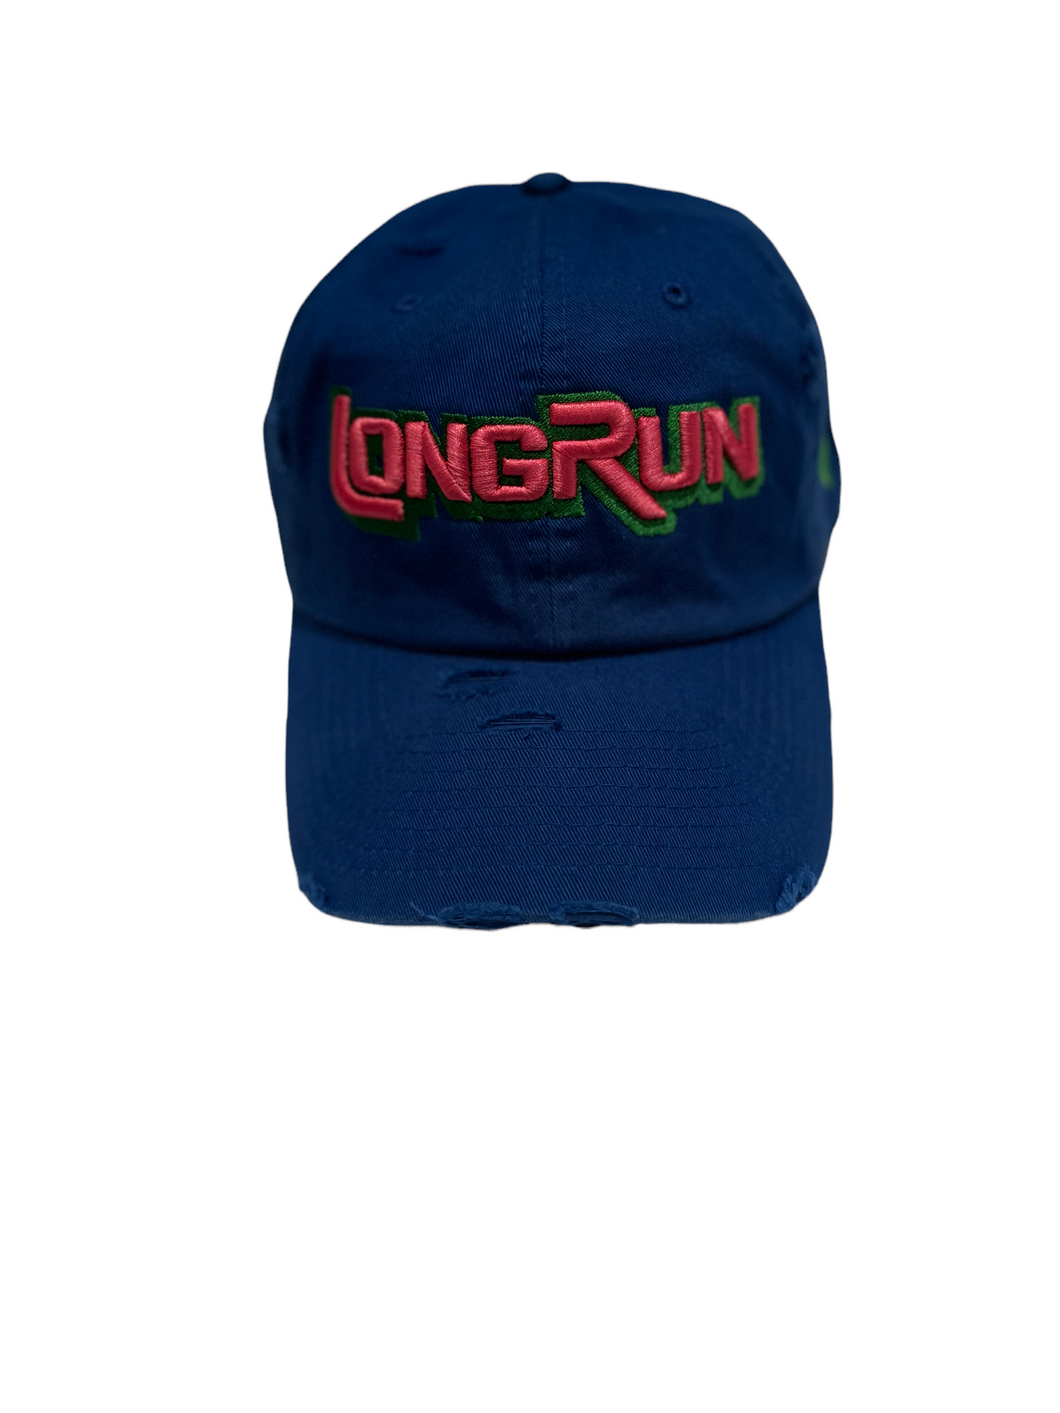 Royal blue pink & green longrun PL dad hat